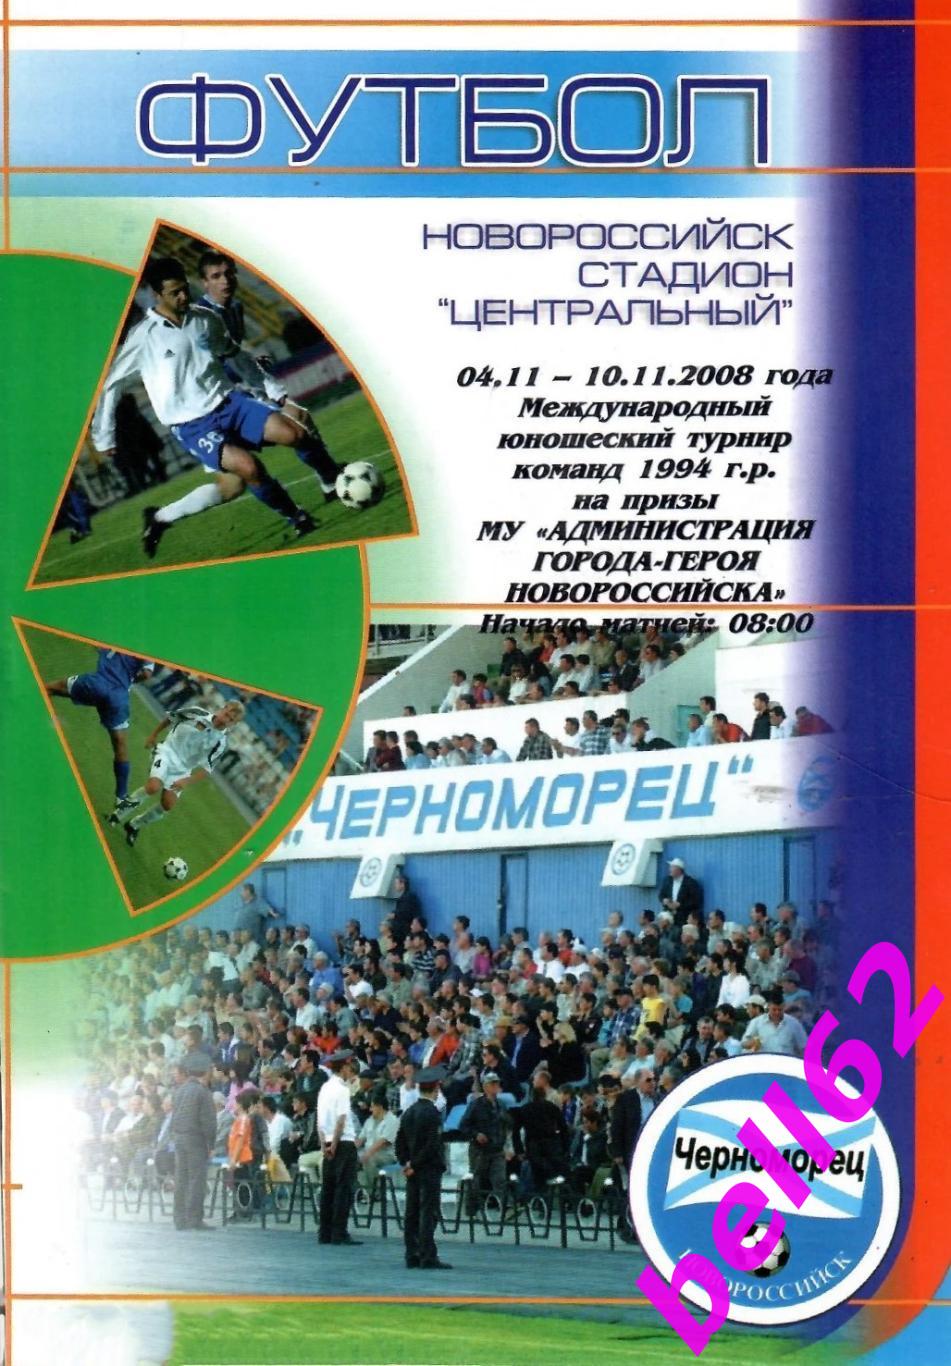 Международный турнир по футболу-04.11.-10.11.2008 г. г. Новороссийск